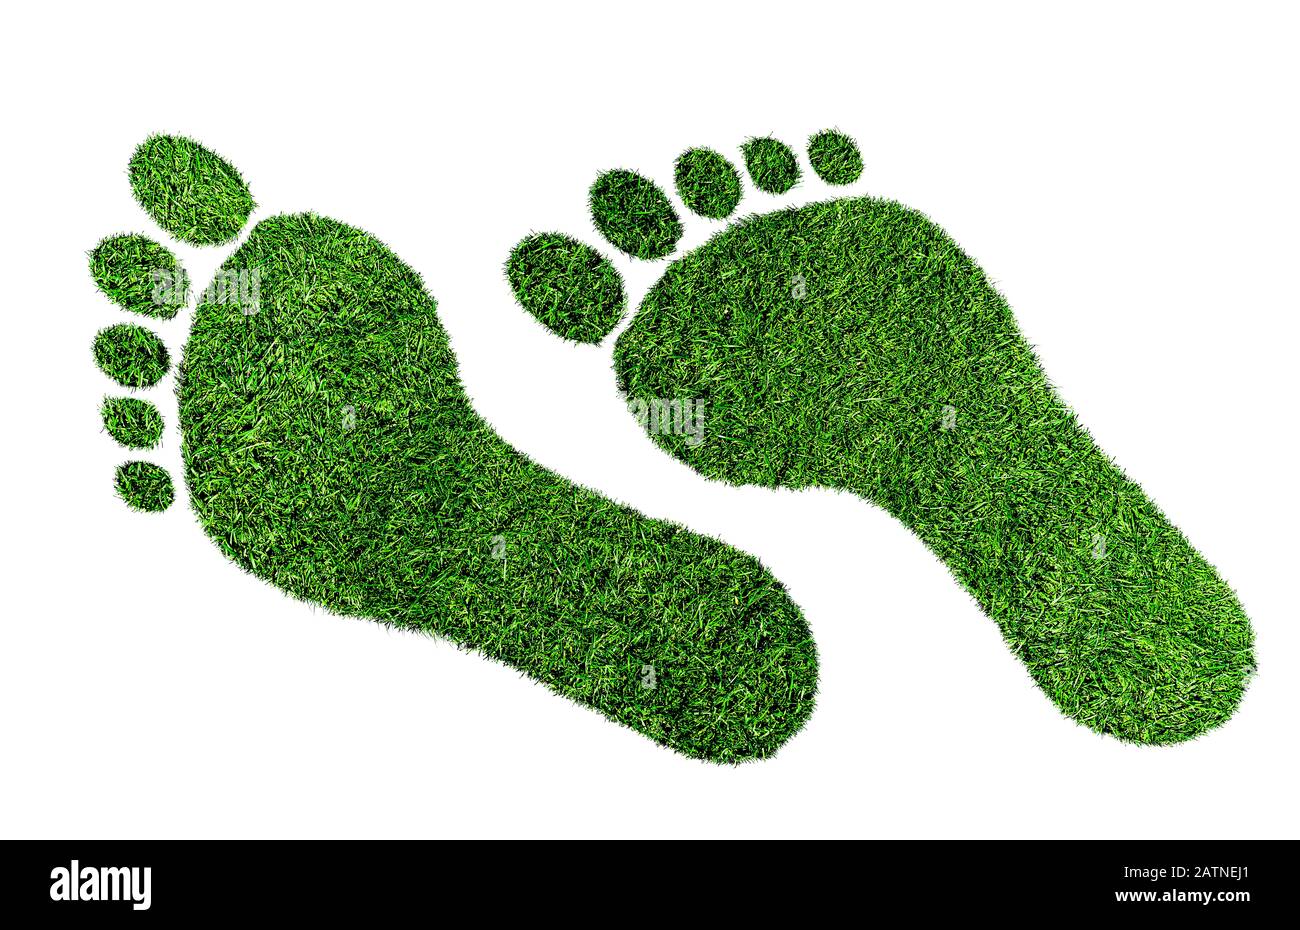 concept d'empreinte écologique, empreinte pieds nus en herbe verte luxuriante isolée sur fond blanc Banque D'Images